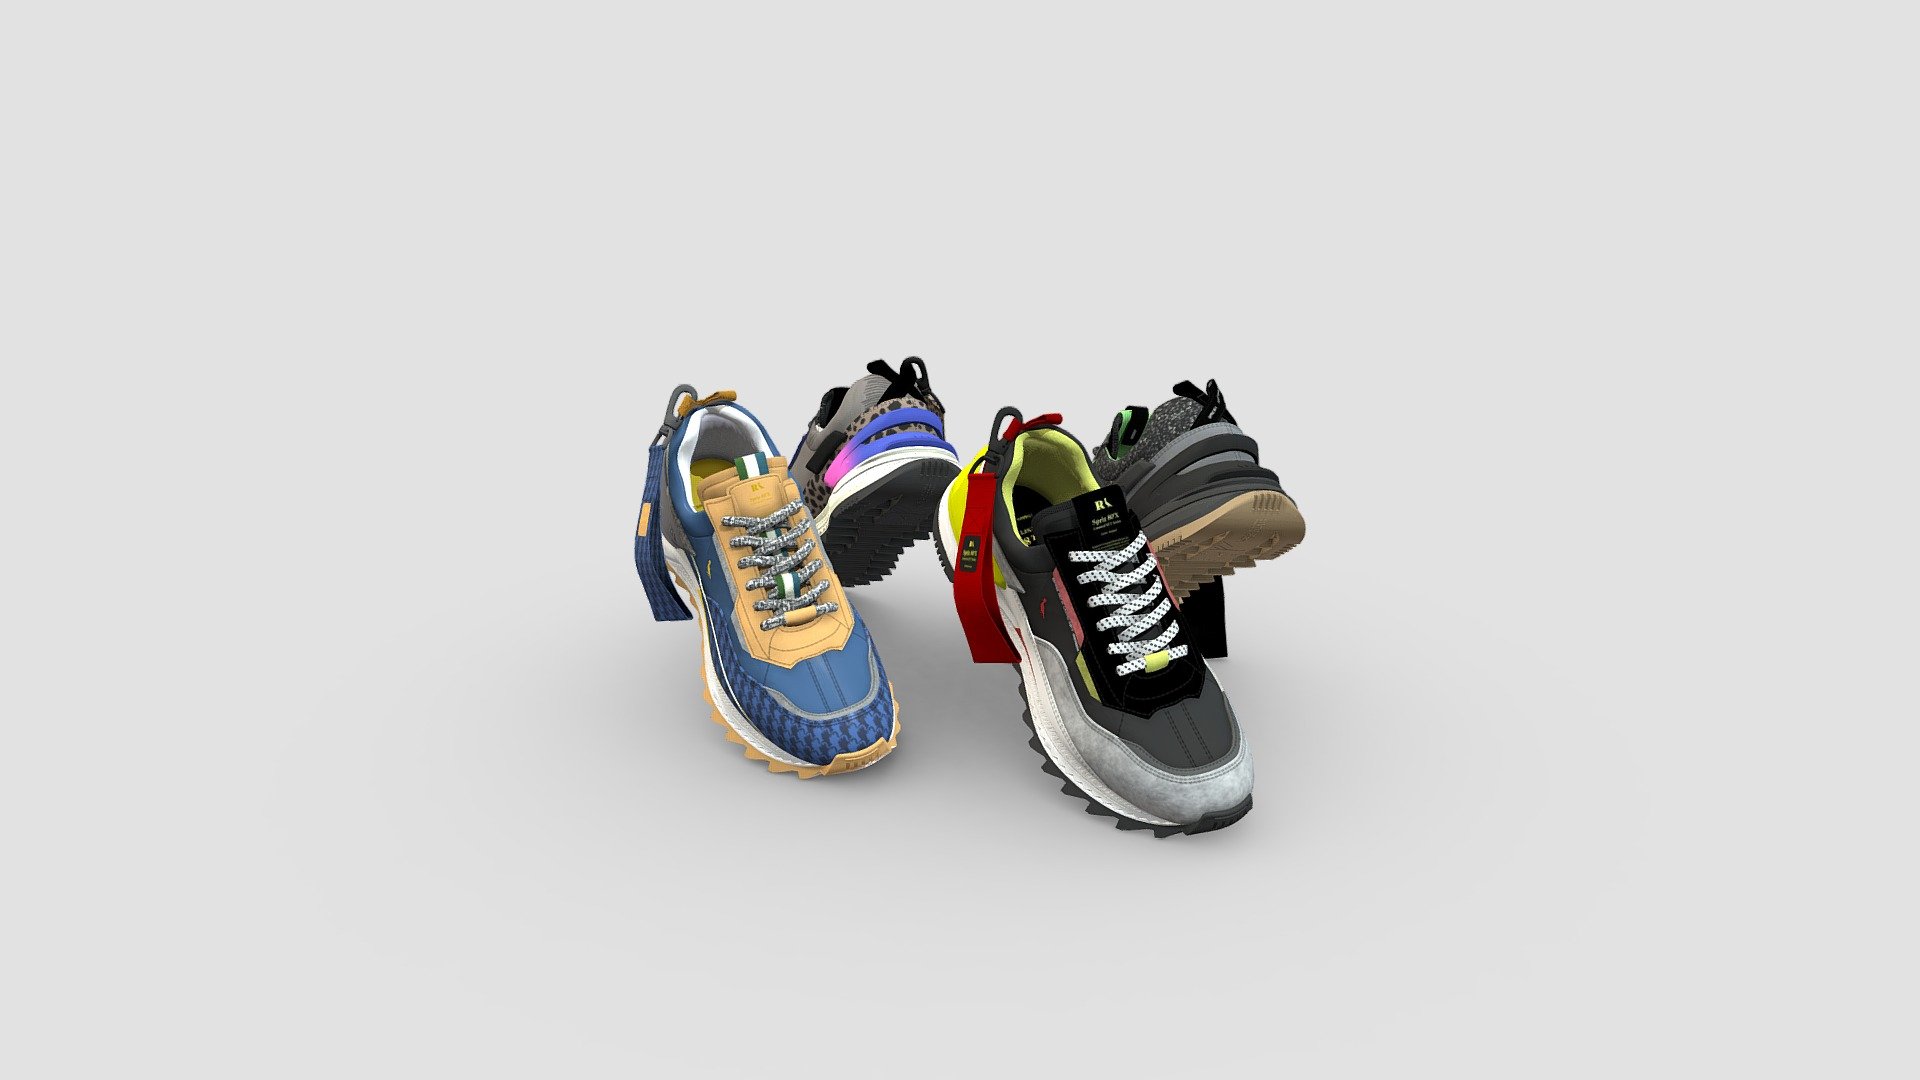 Reserva Sneaker - SPRIZ NFT - 3D model by Harpia Studio (@harpiastudio) 3d model